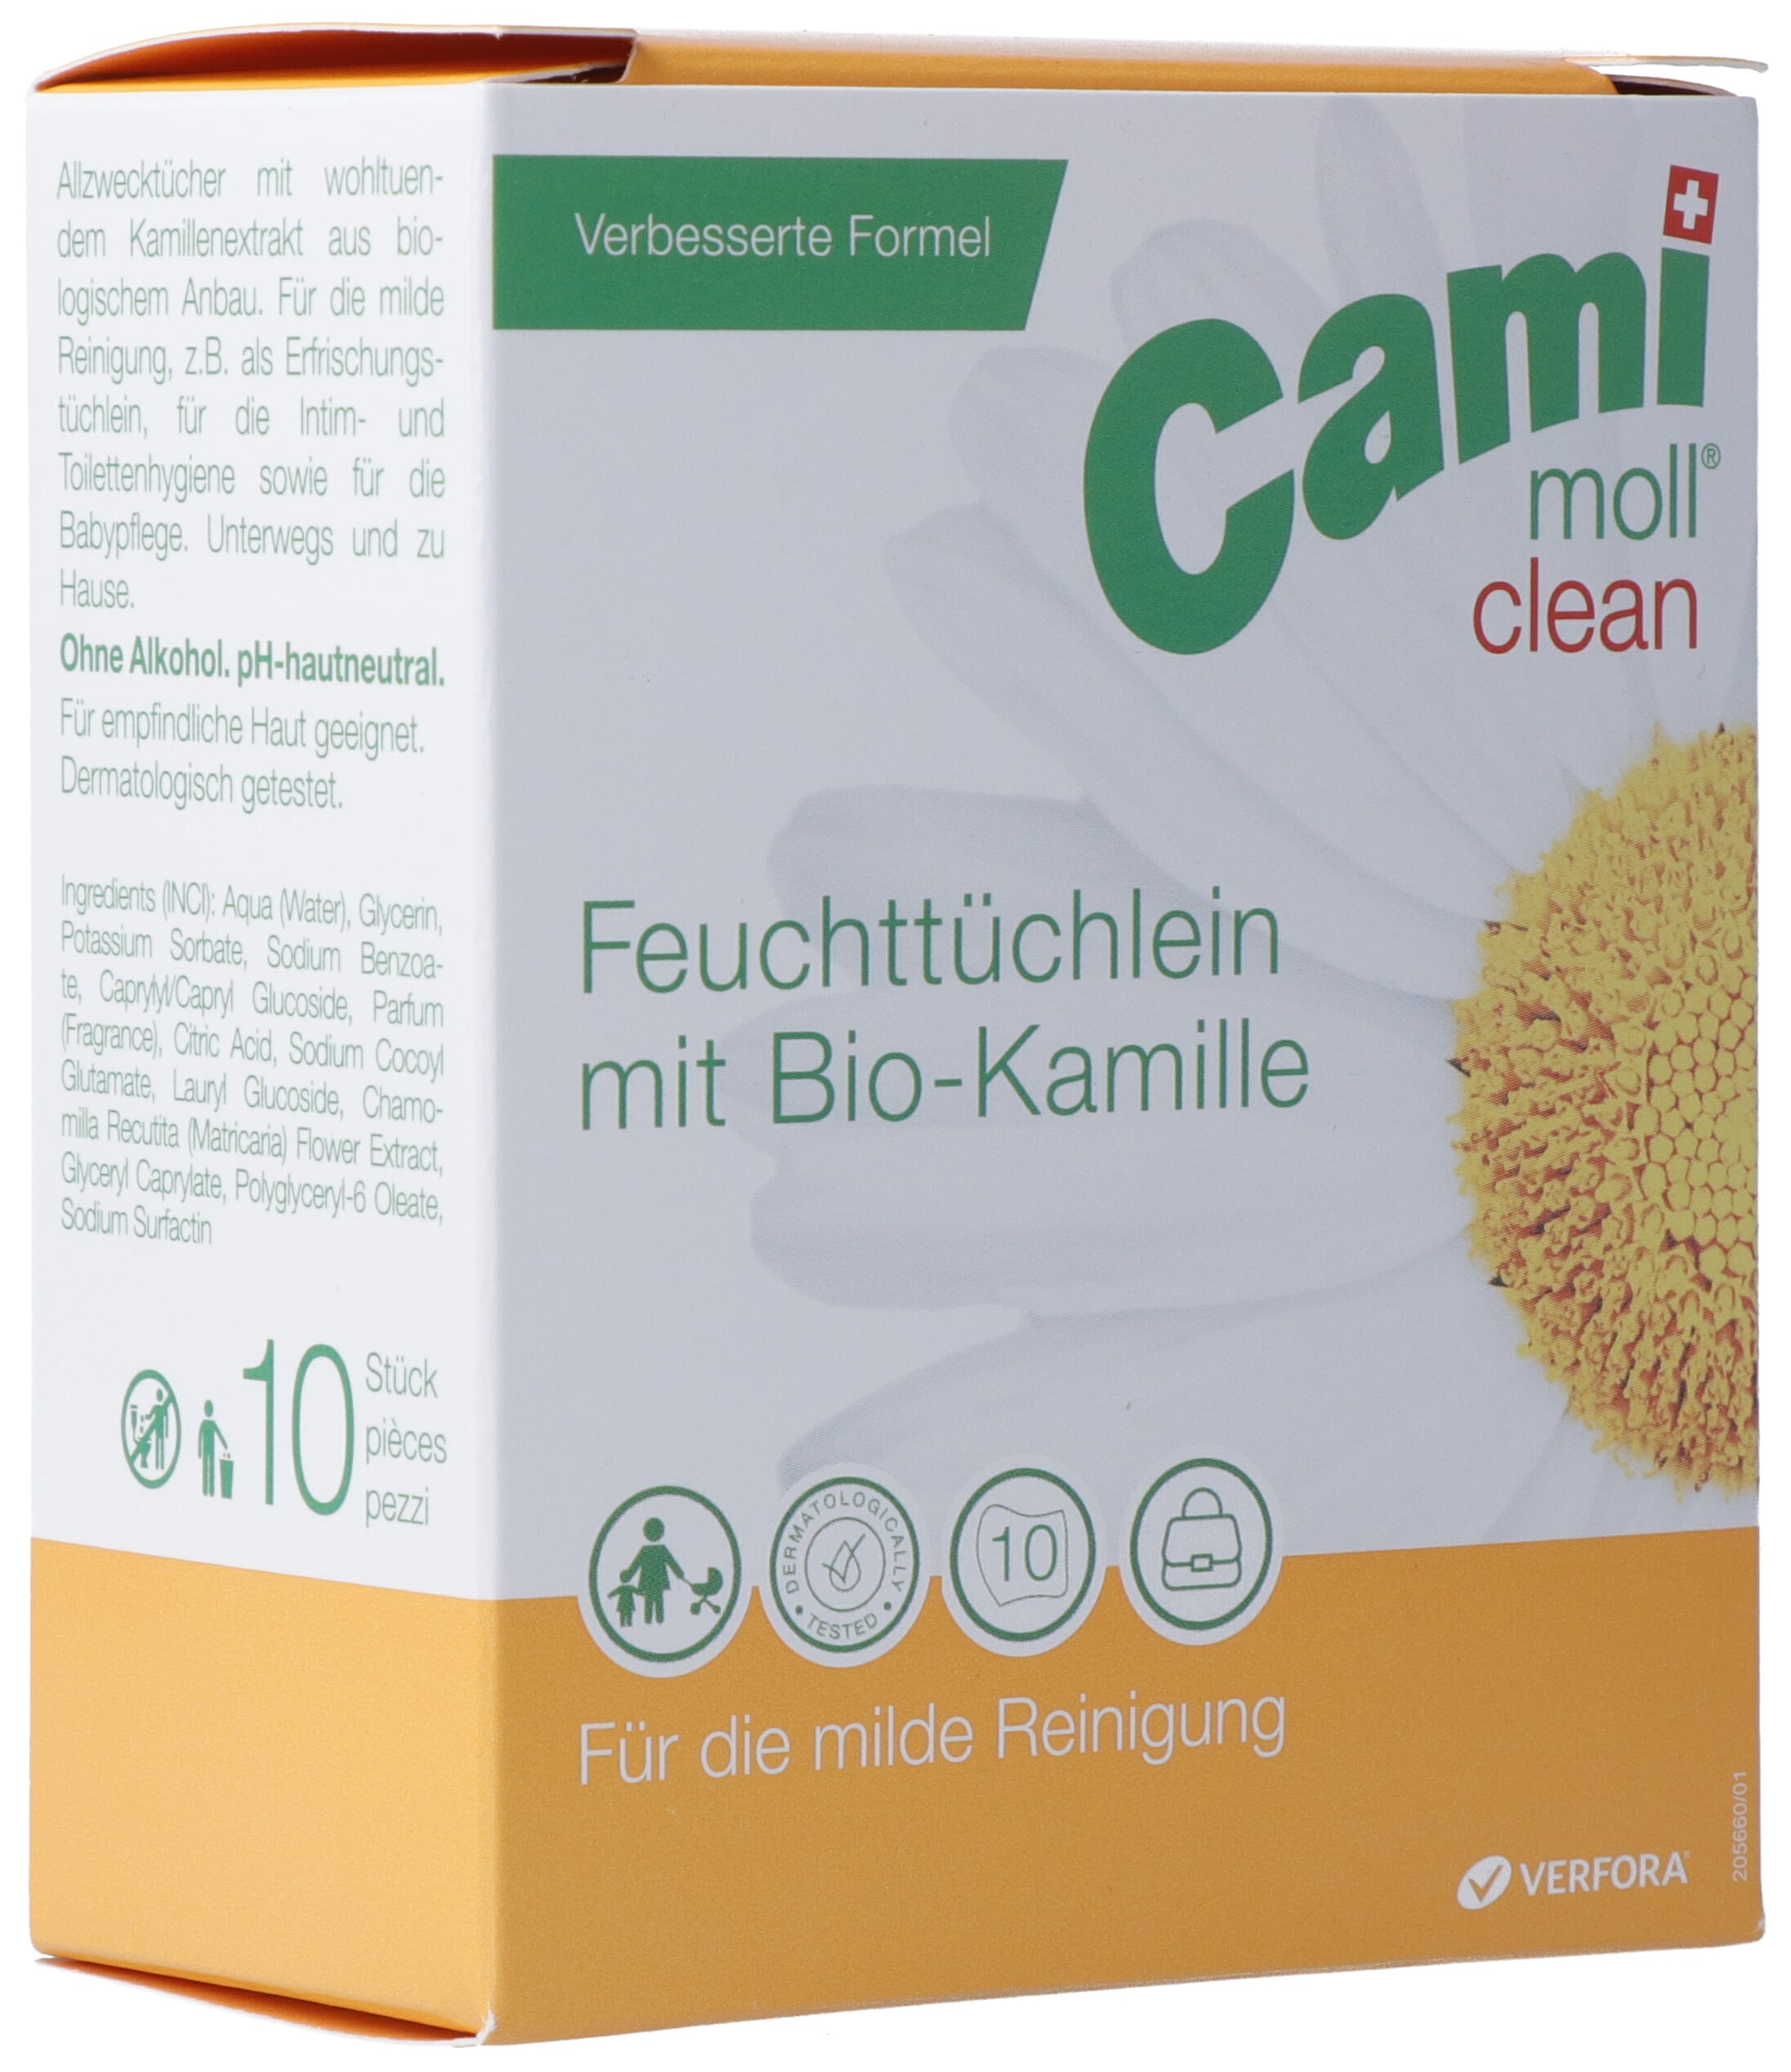 CAMI MOLL clean Feuchttücher NF Btl 10 Stk